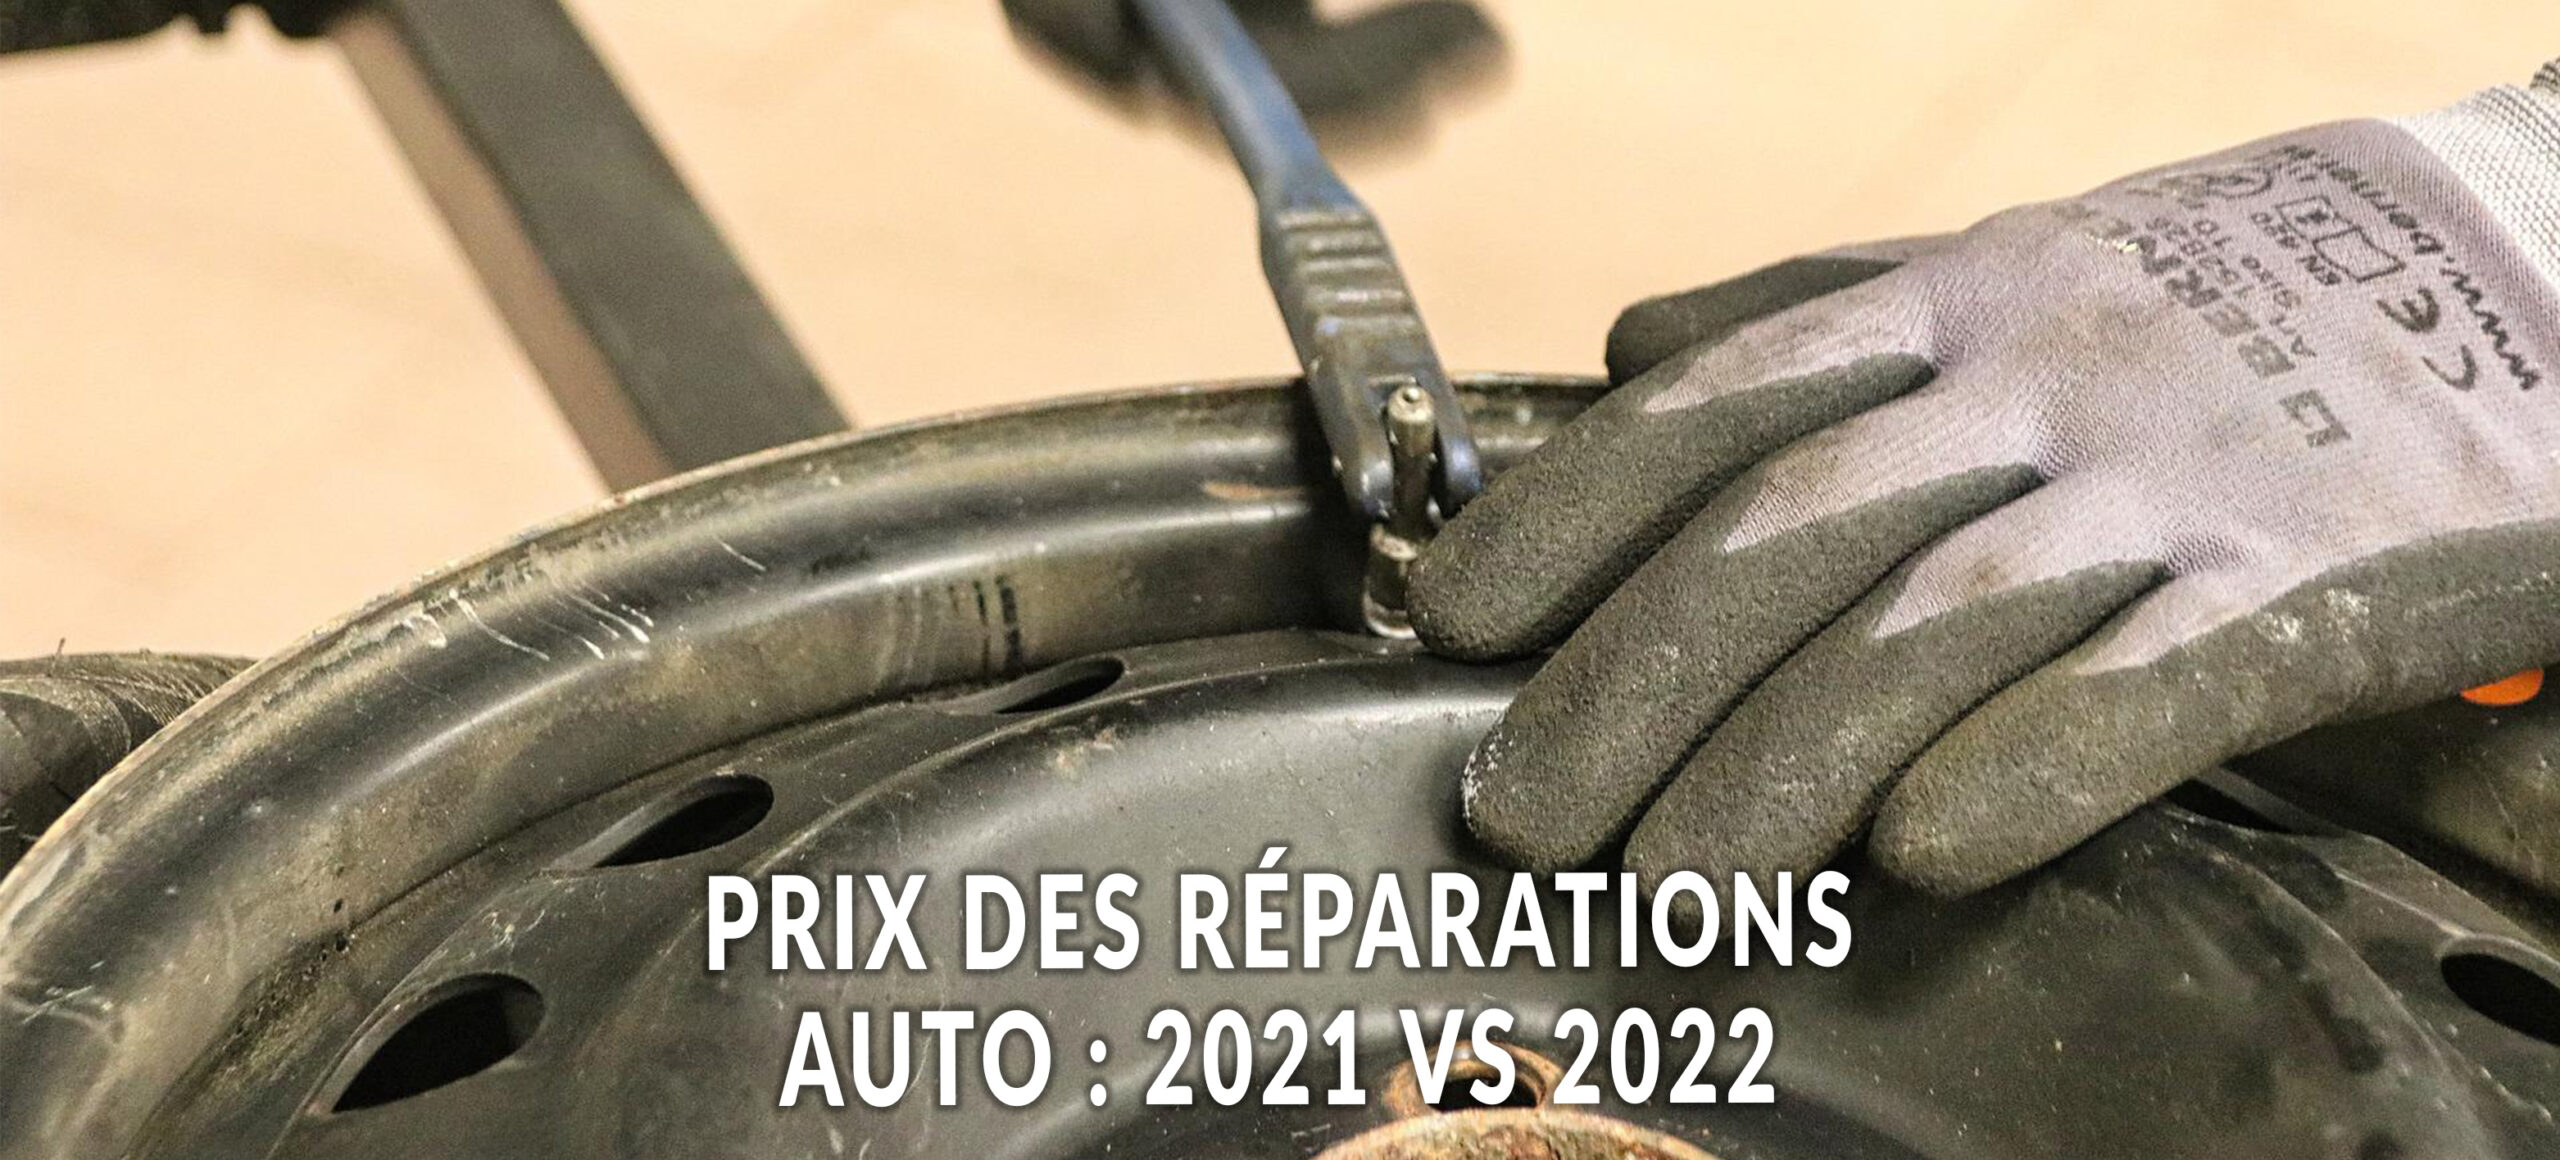 Coût des réparations auto : 2021 VS 2022